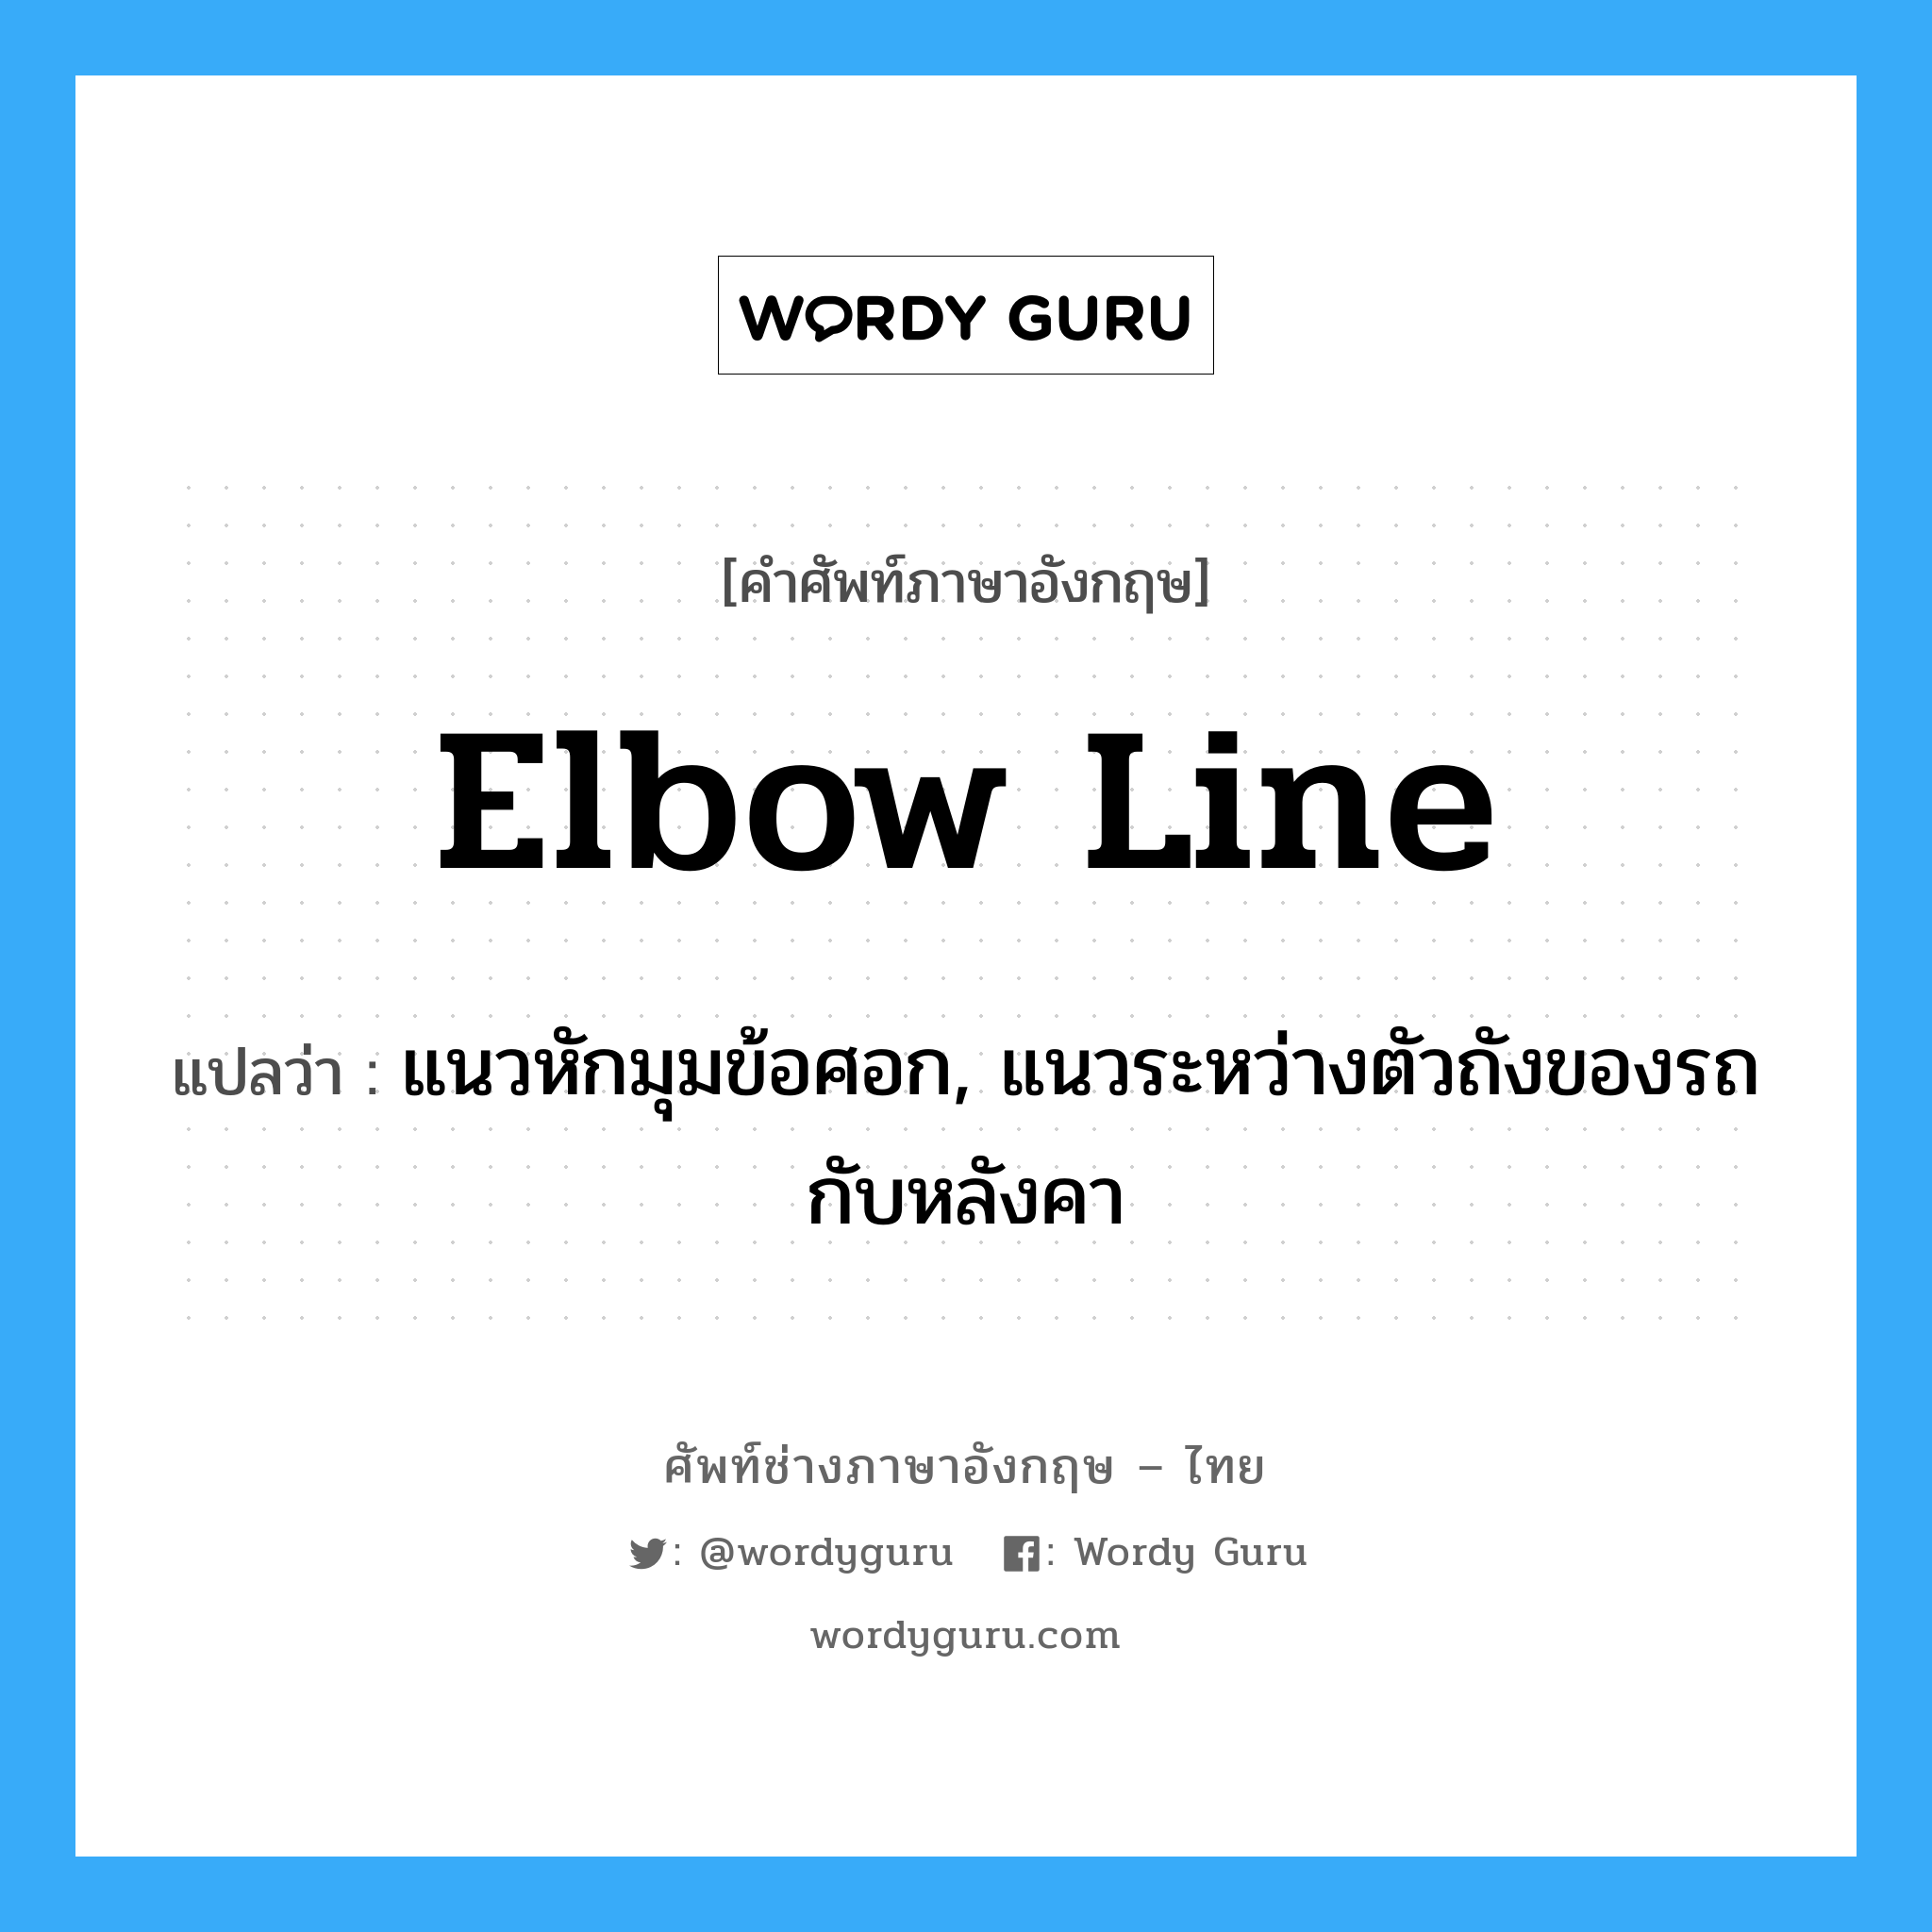 elbow line แปลว่า?, คำศัพท์ช่างภาษาอังกฤษ - ไทย elbow line คำศัพท์ภาษาอังกฤษ elbow line แปลว่า แนวหักมุมข้อศอก, แนวระหว่างตัวถังของรถกับหลังคา